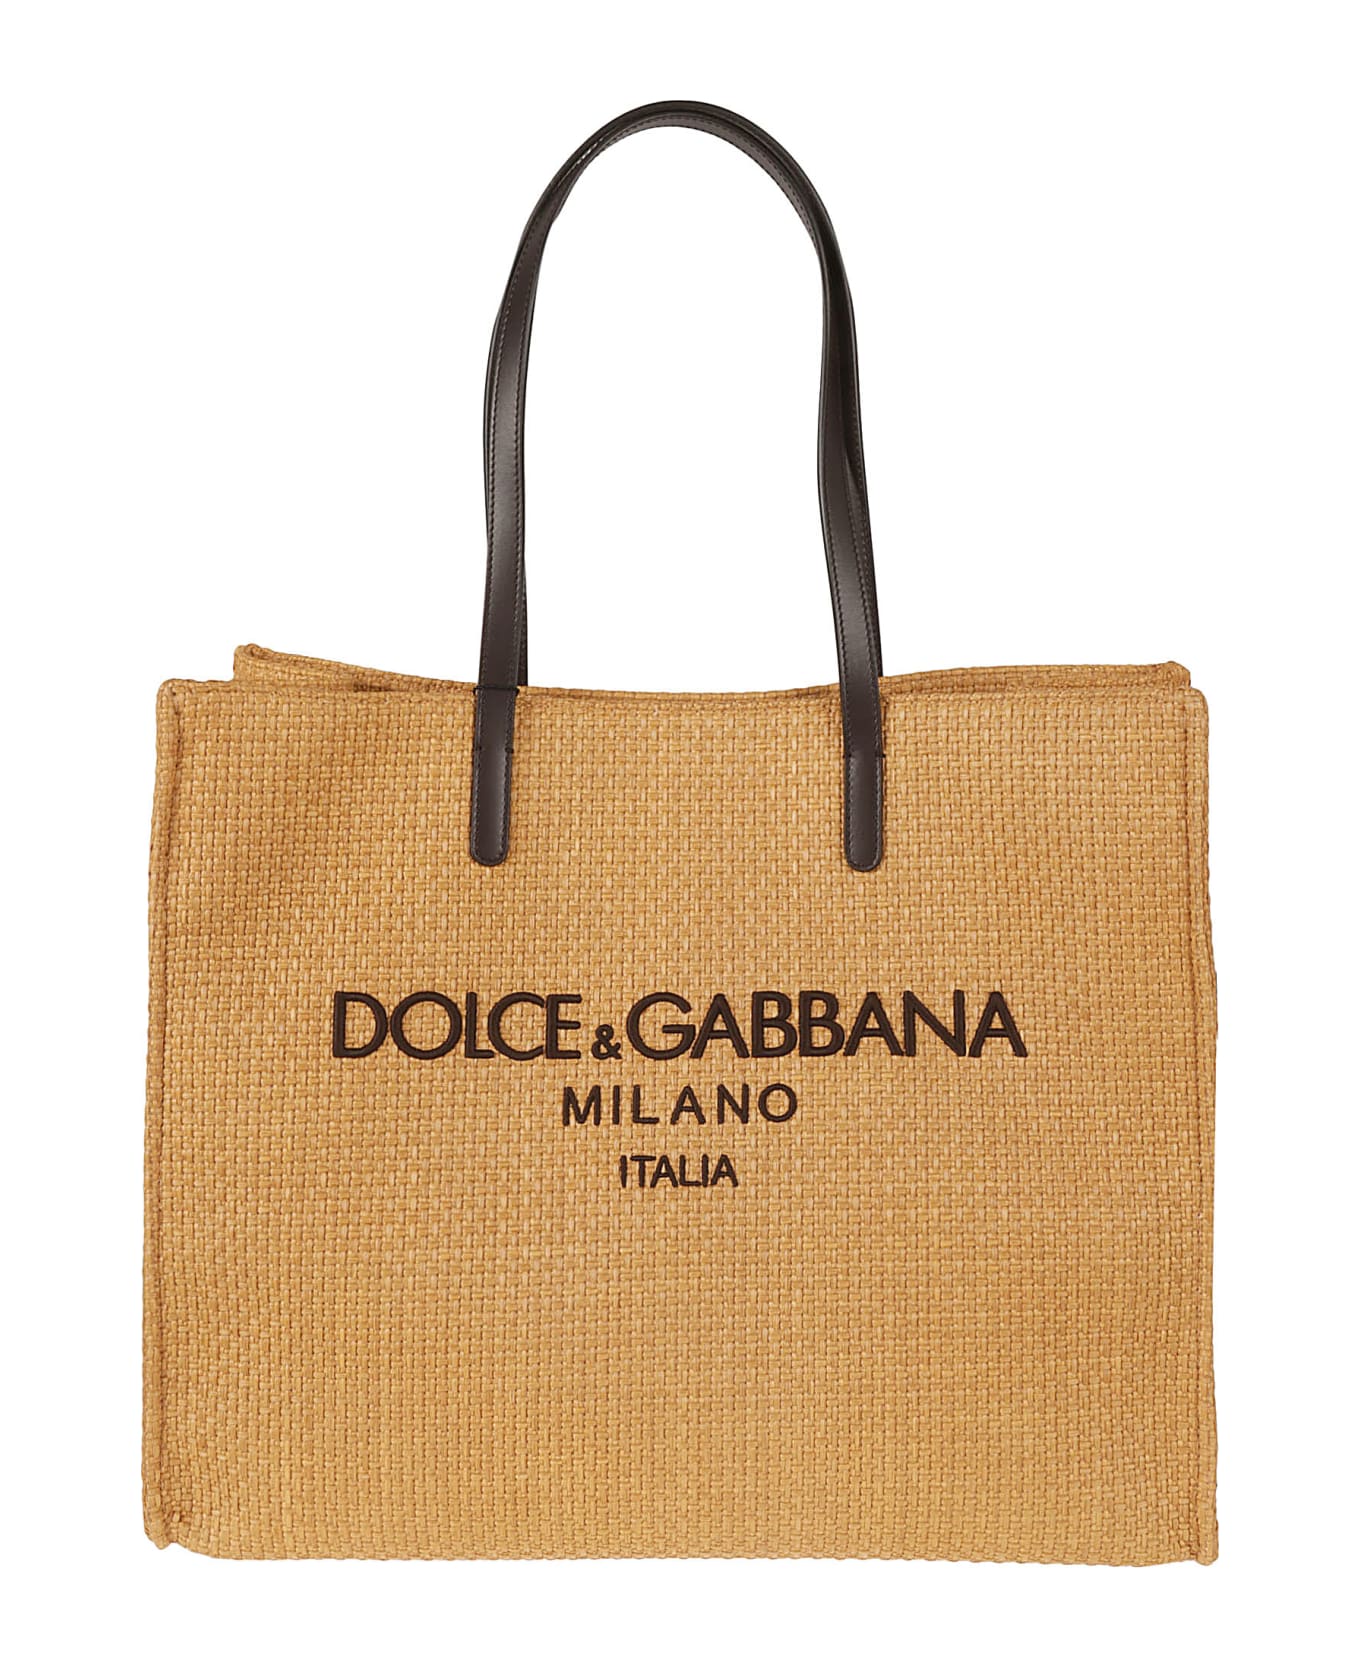 Dolce & Gabbana Logo Milano Tote - Camel/Dark Brown